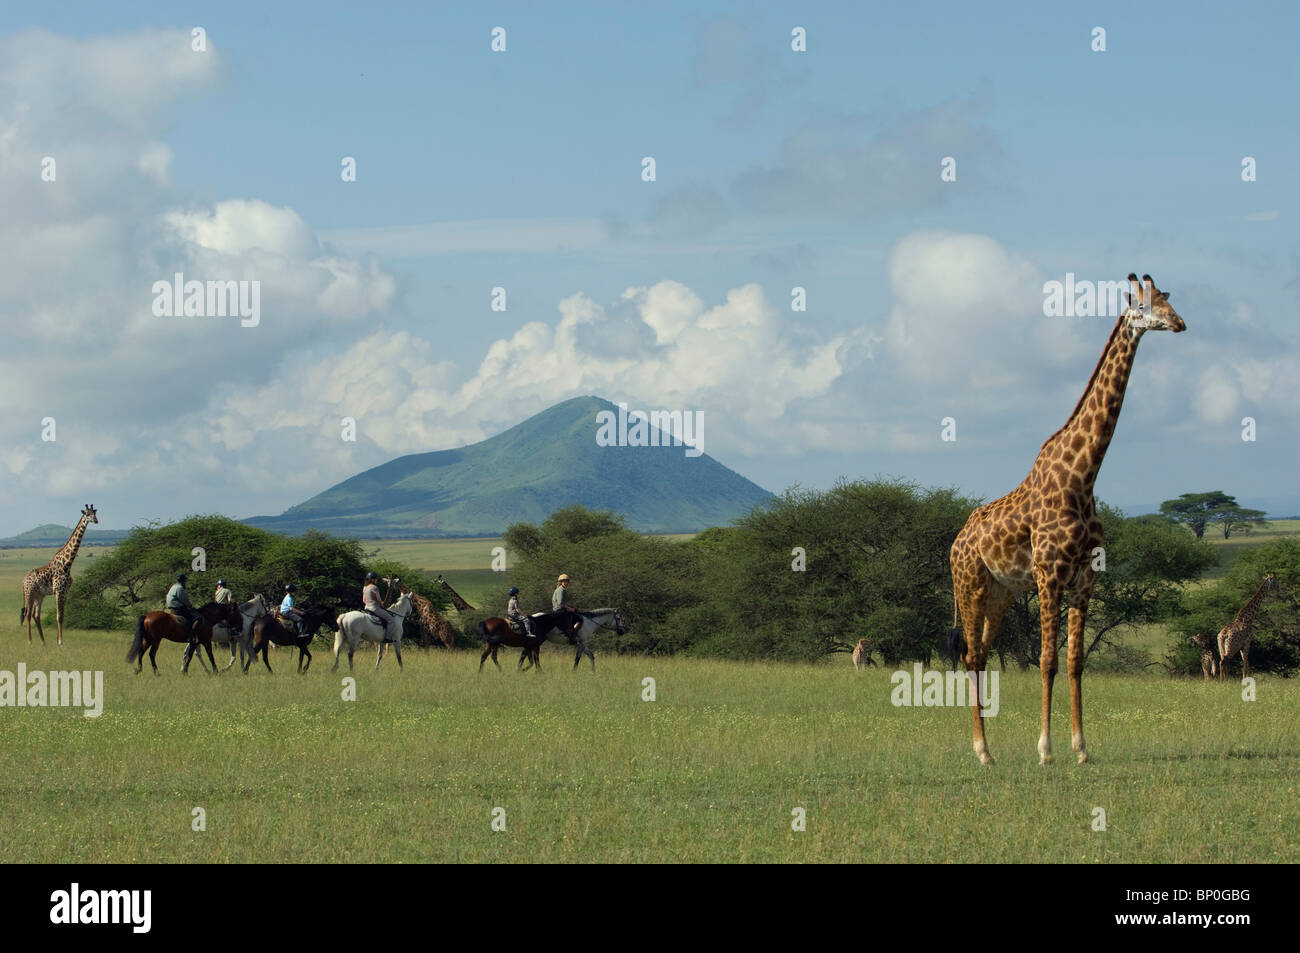 Kenya, Chyulu Hills, Ol Donyo ar. Una familia en un safari de equitación, paseo cerca de la jirafa masai en las llanuras. Foto de stock